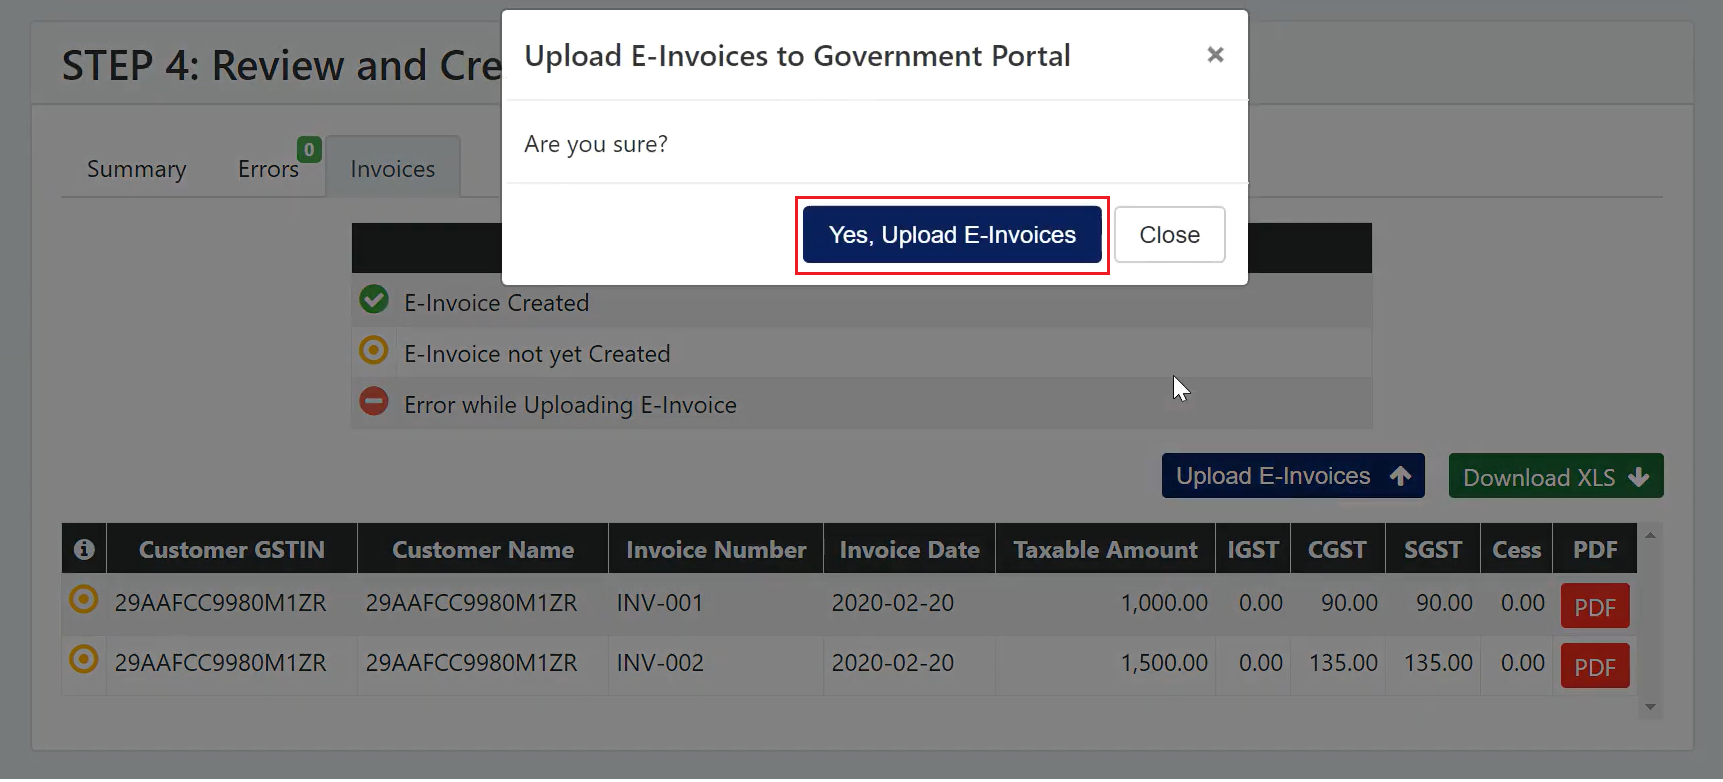 E-Invoice Upload to Government Portal